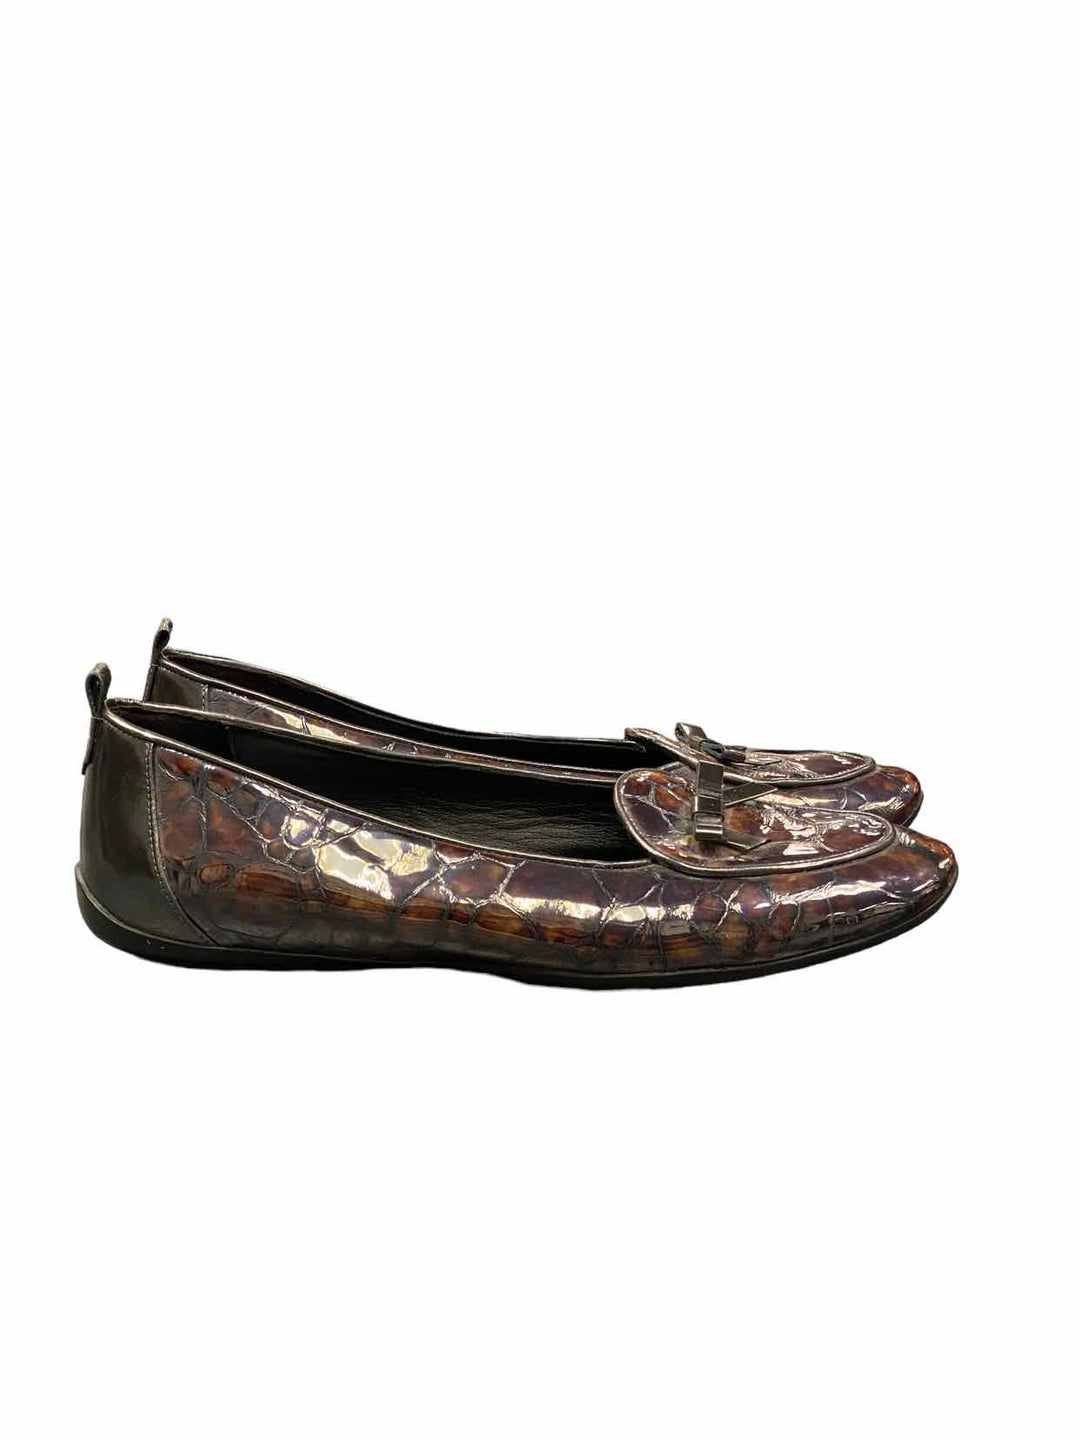 Donald Pliner Shoe Size 8 Leather Flats